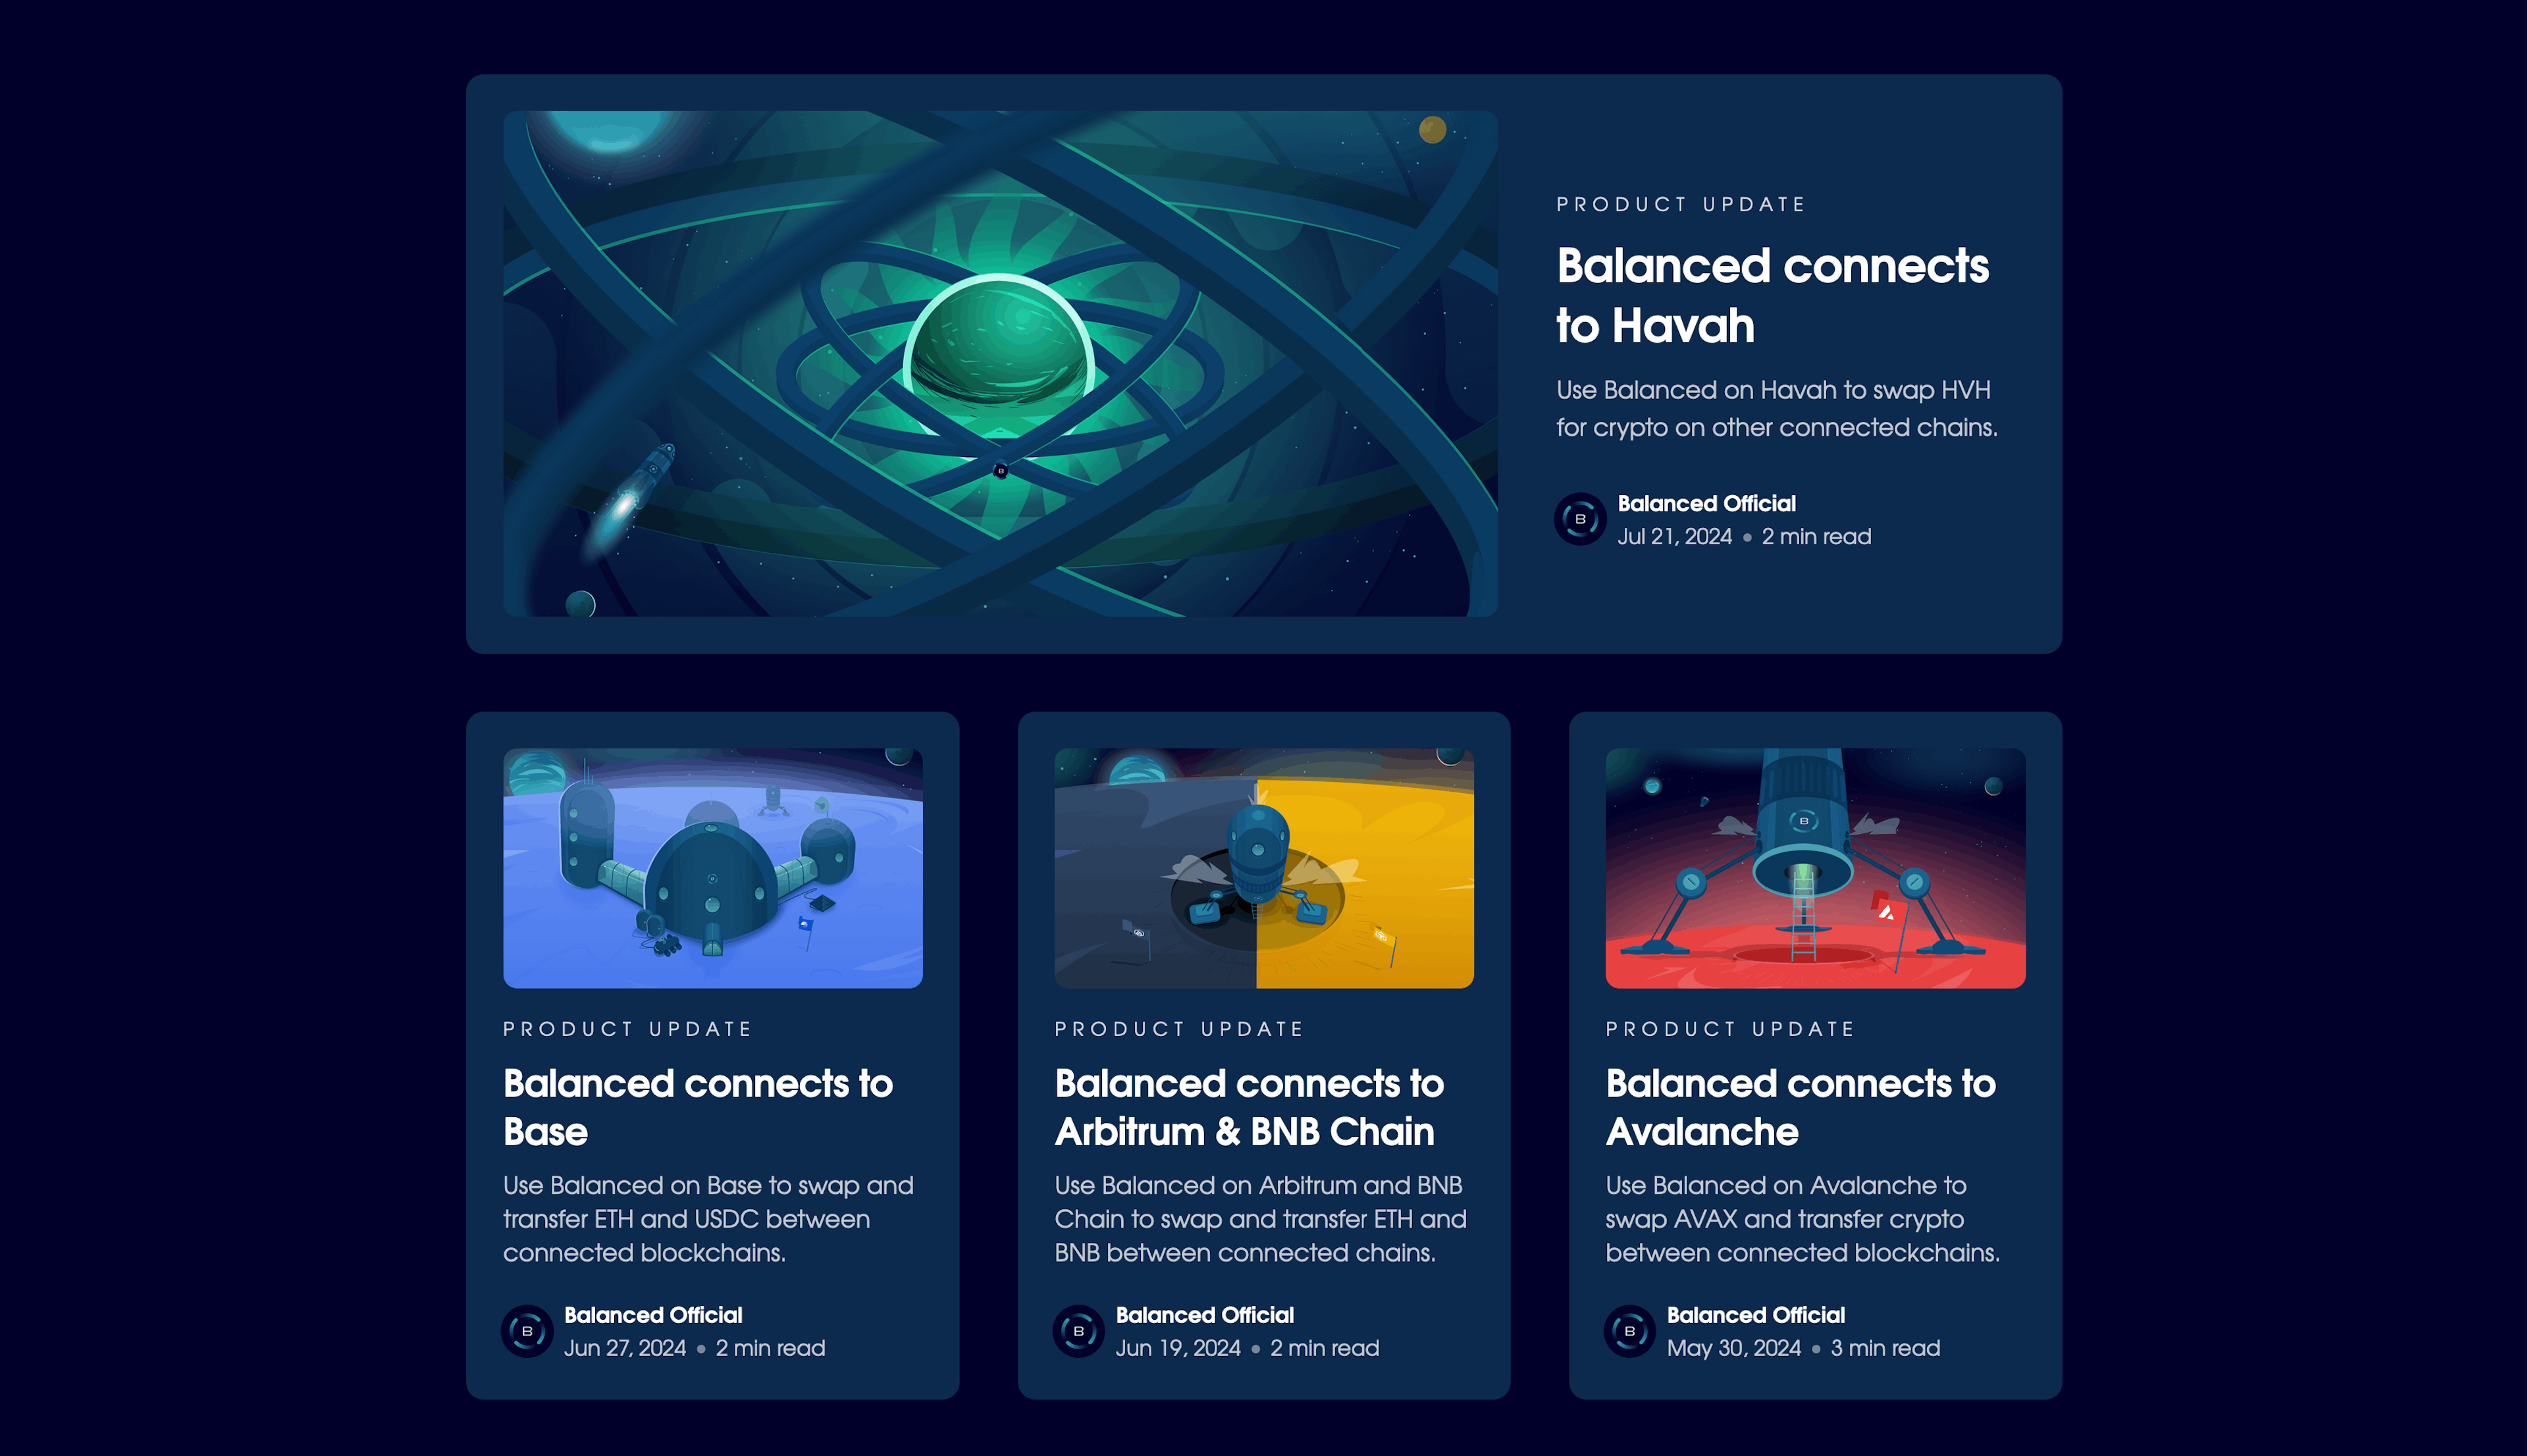 Balanced 博客展示了五个新联系。